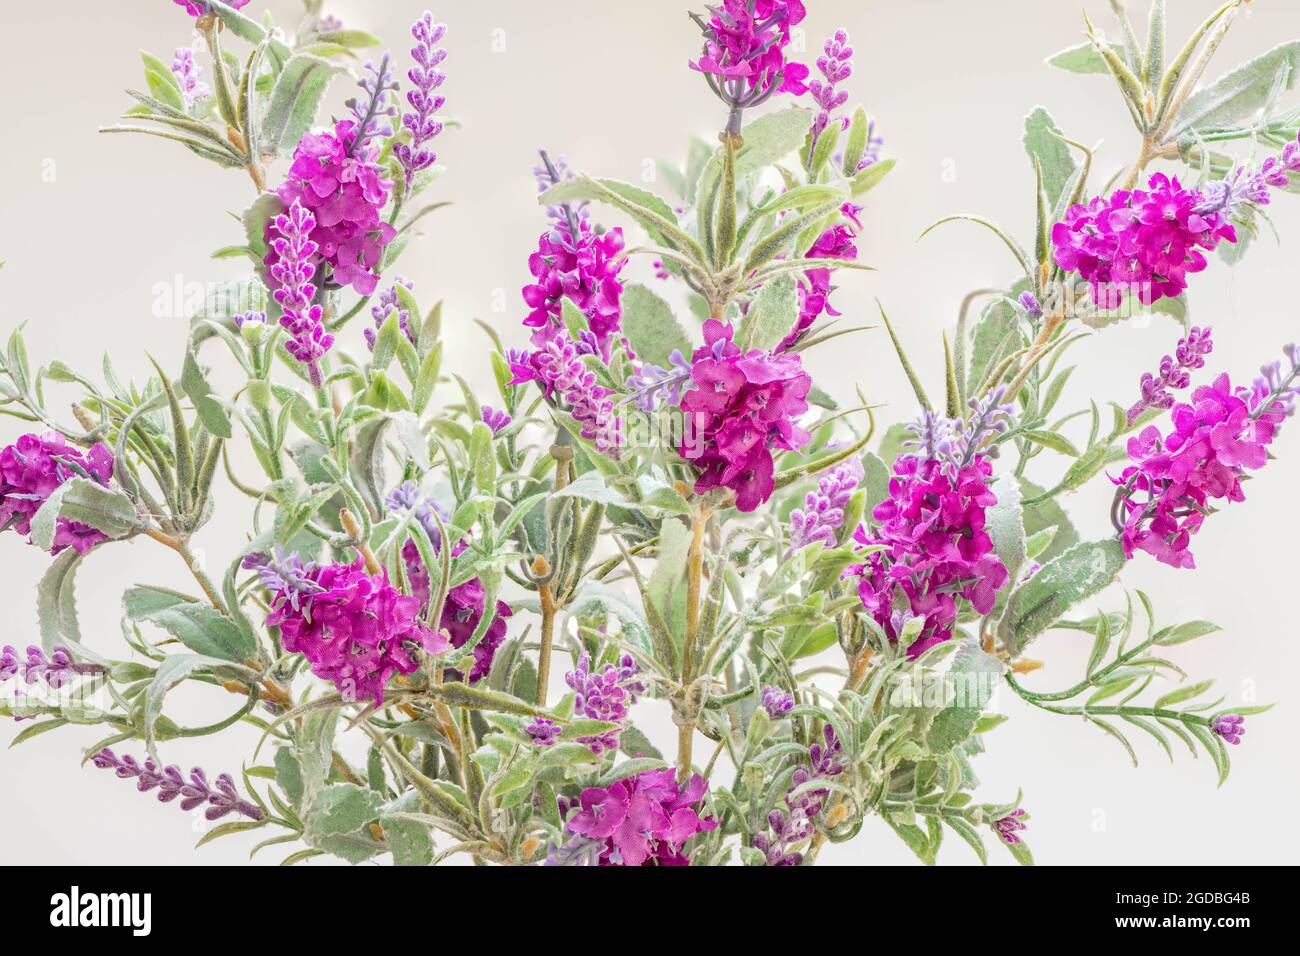 Le Texas Ranger ou Baromètre Bush ou sage brousse avec sa fleur lilas distinctive dans cette image faite de tissus de coton. Banque D'Images